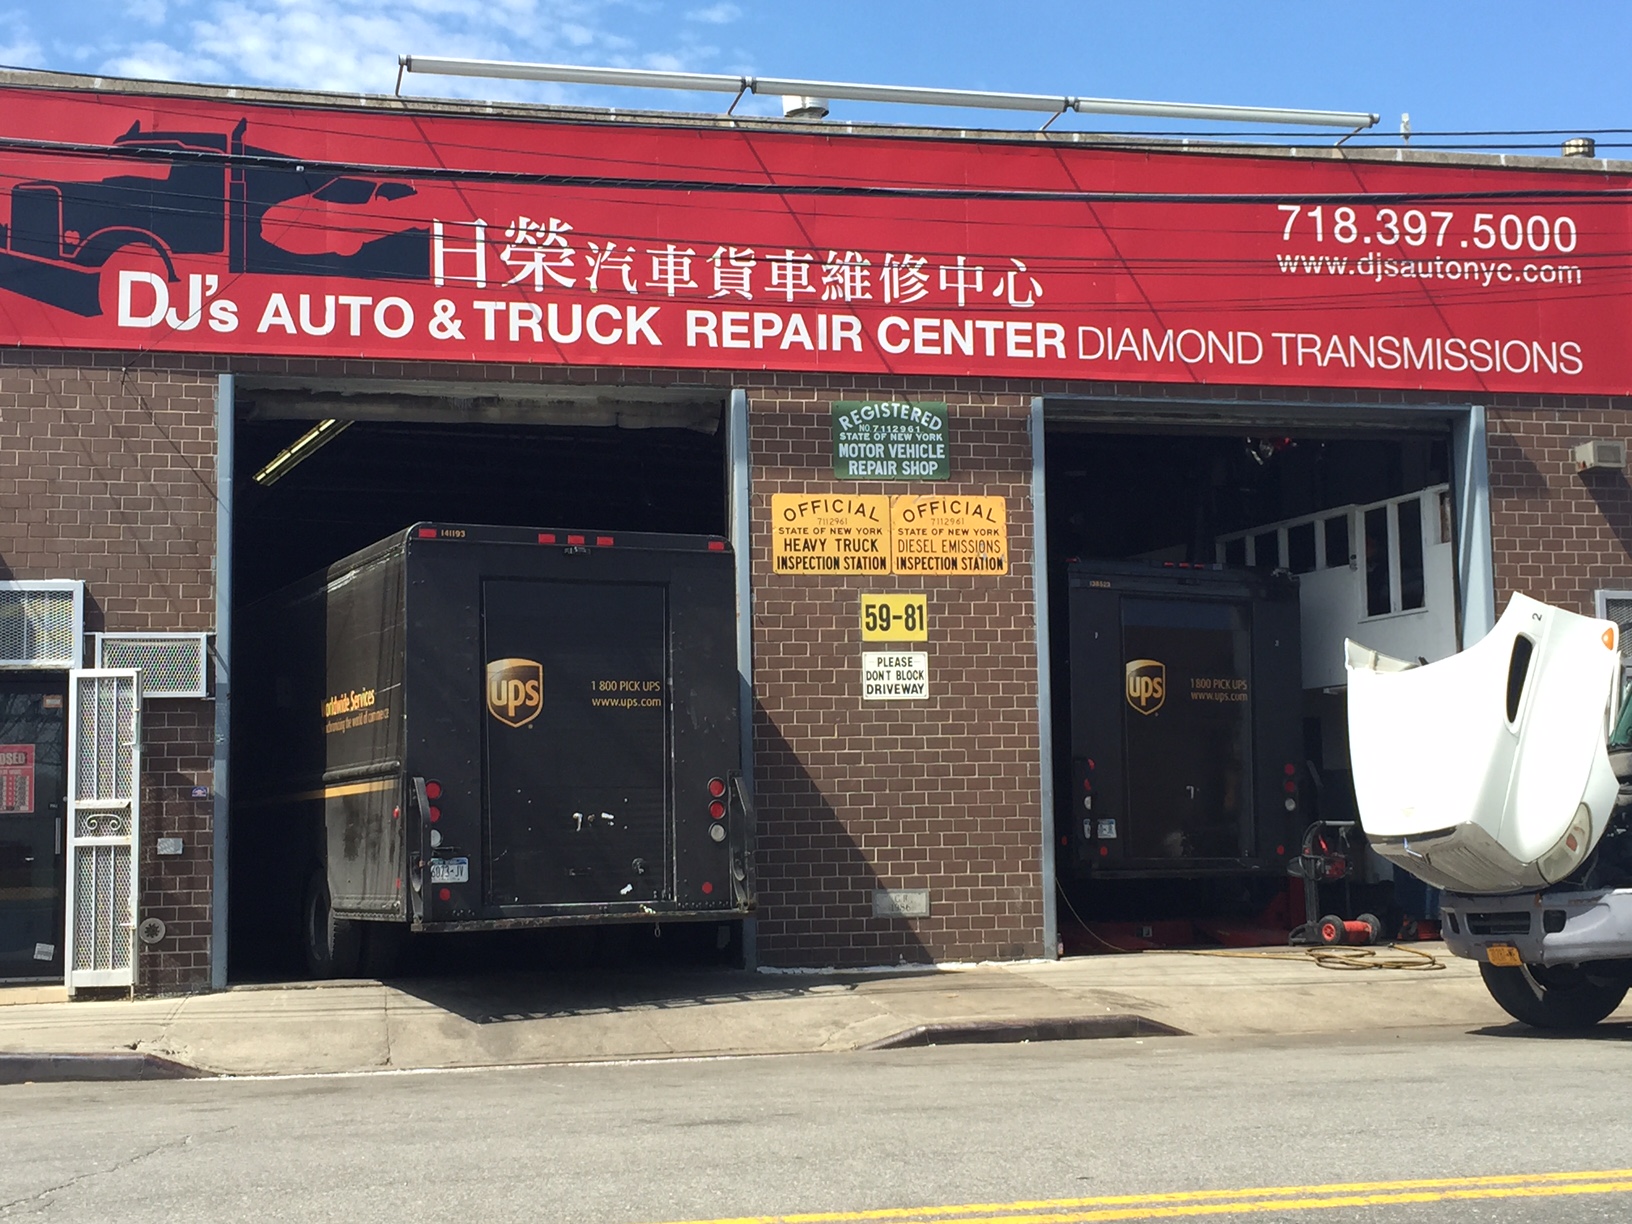 DJ's Auto & Truck Repair Center